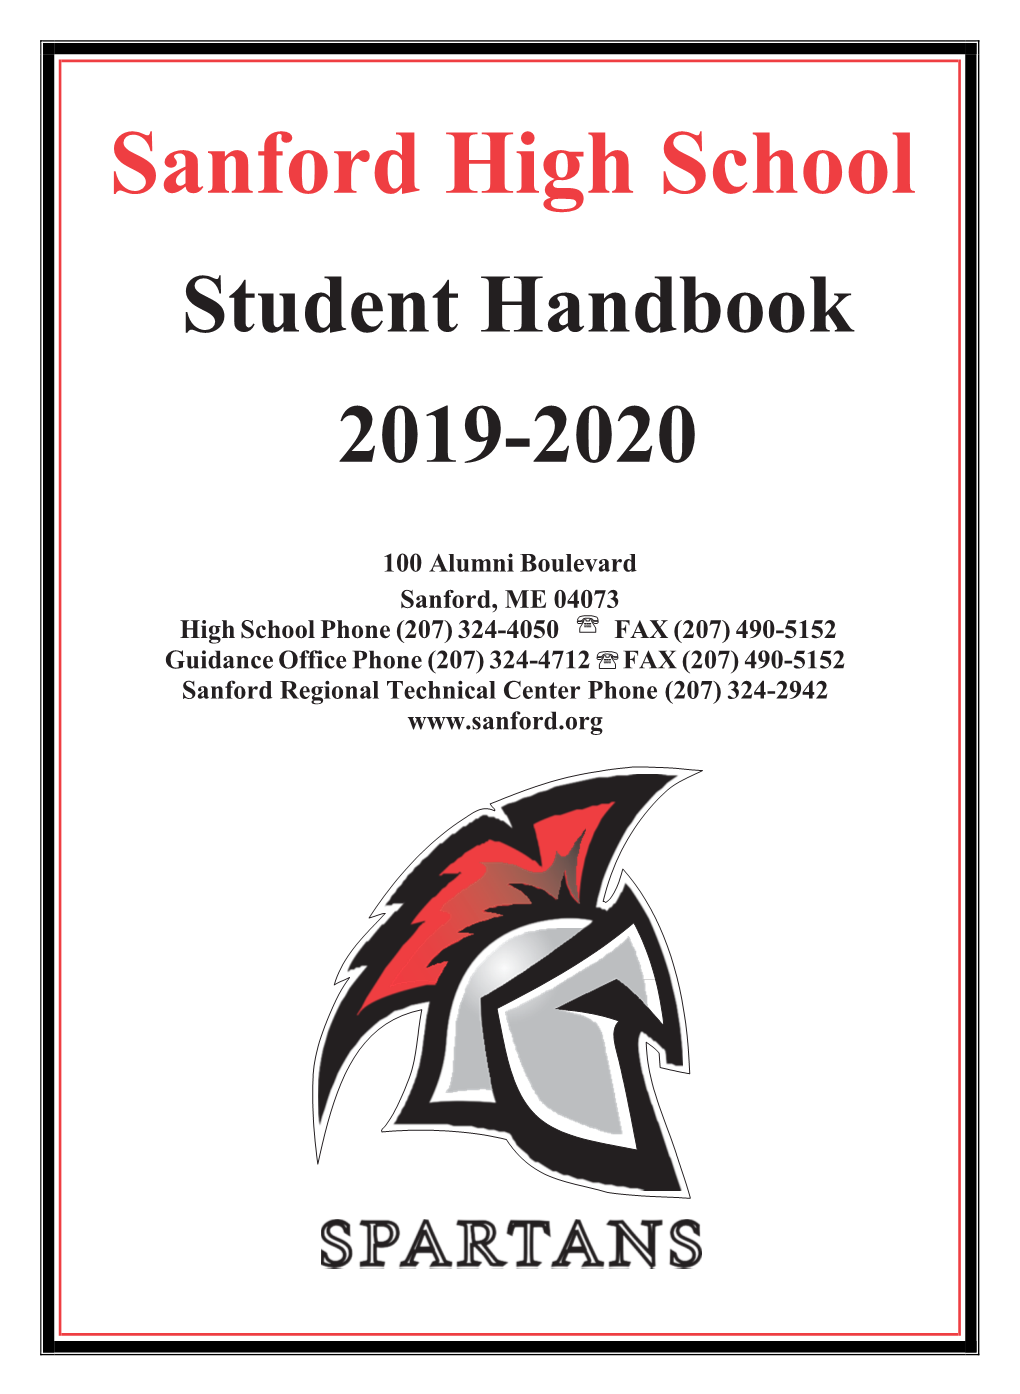 Sanford High School Student Handbook 2019-2020